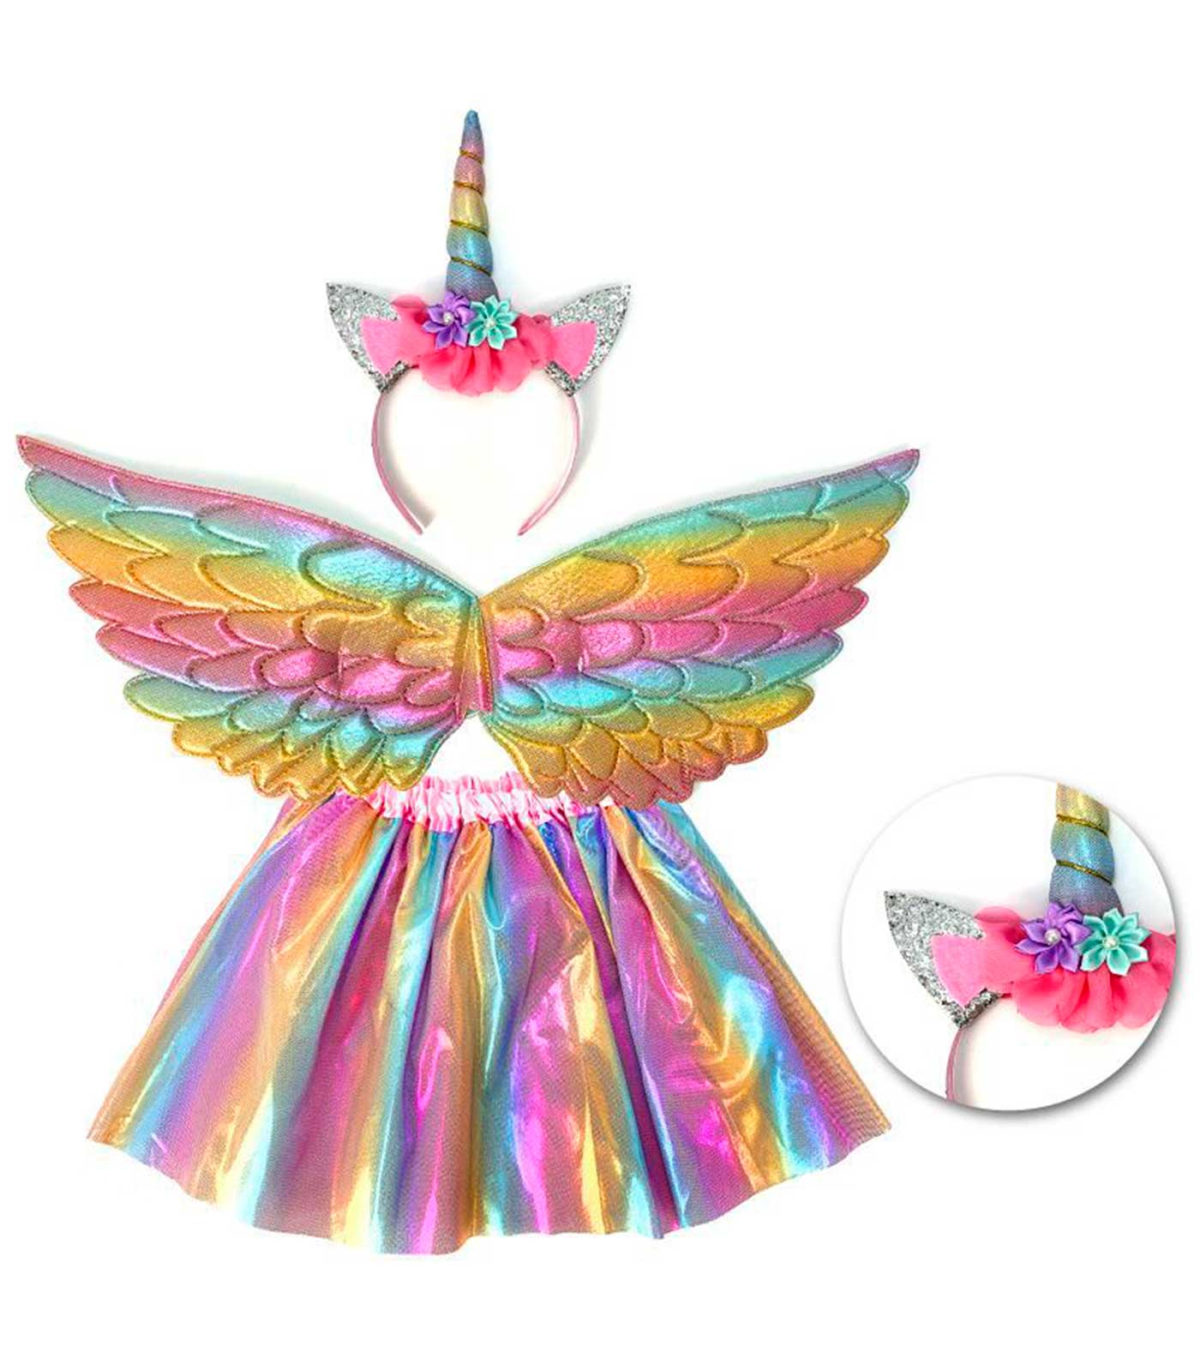 Tradineur - Disfraz infantil de Unicornio, 3 piezas, poliéster, incluye  falda, alas y diadema, carnaval, Halloween, cosplay (Niñ